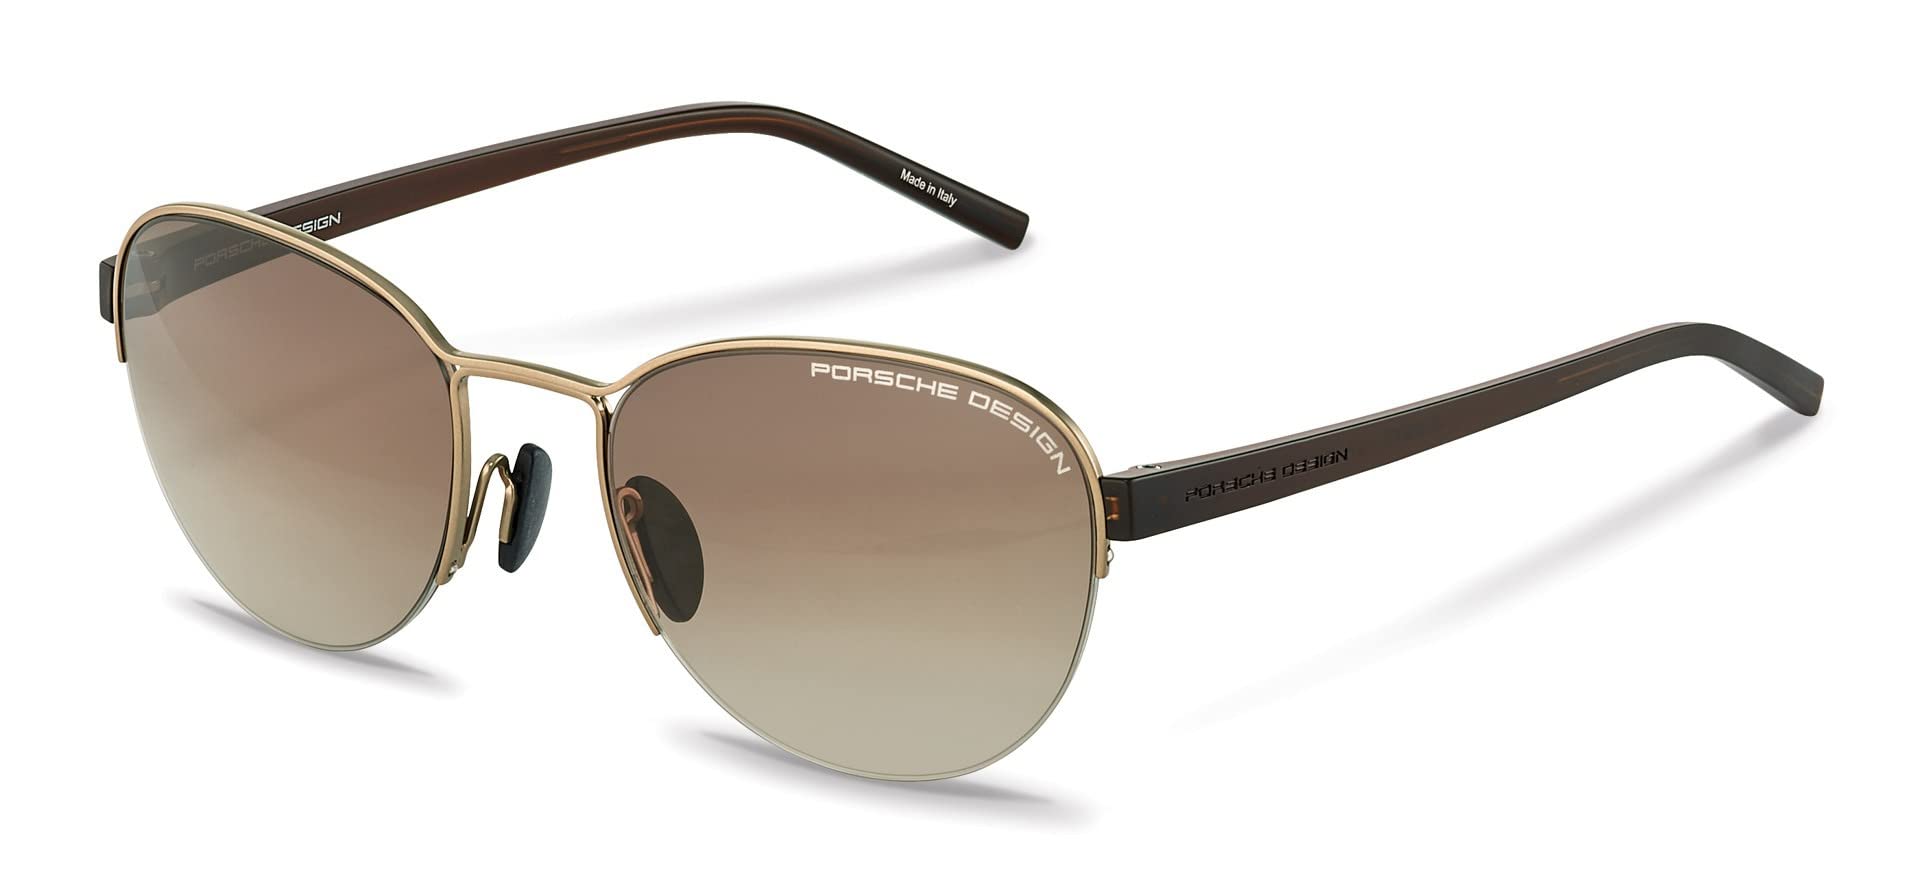 Porsche Design Men's P8677 Sunglasses, c, 54